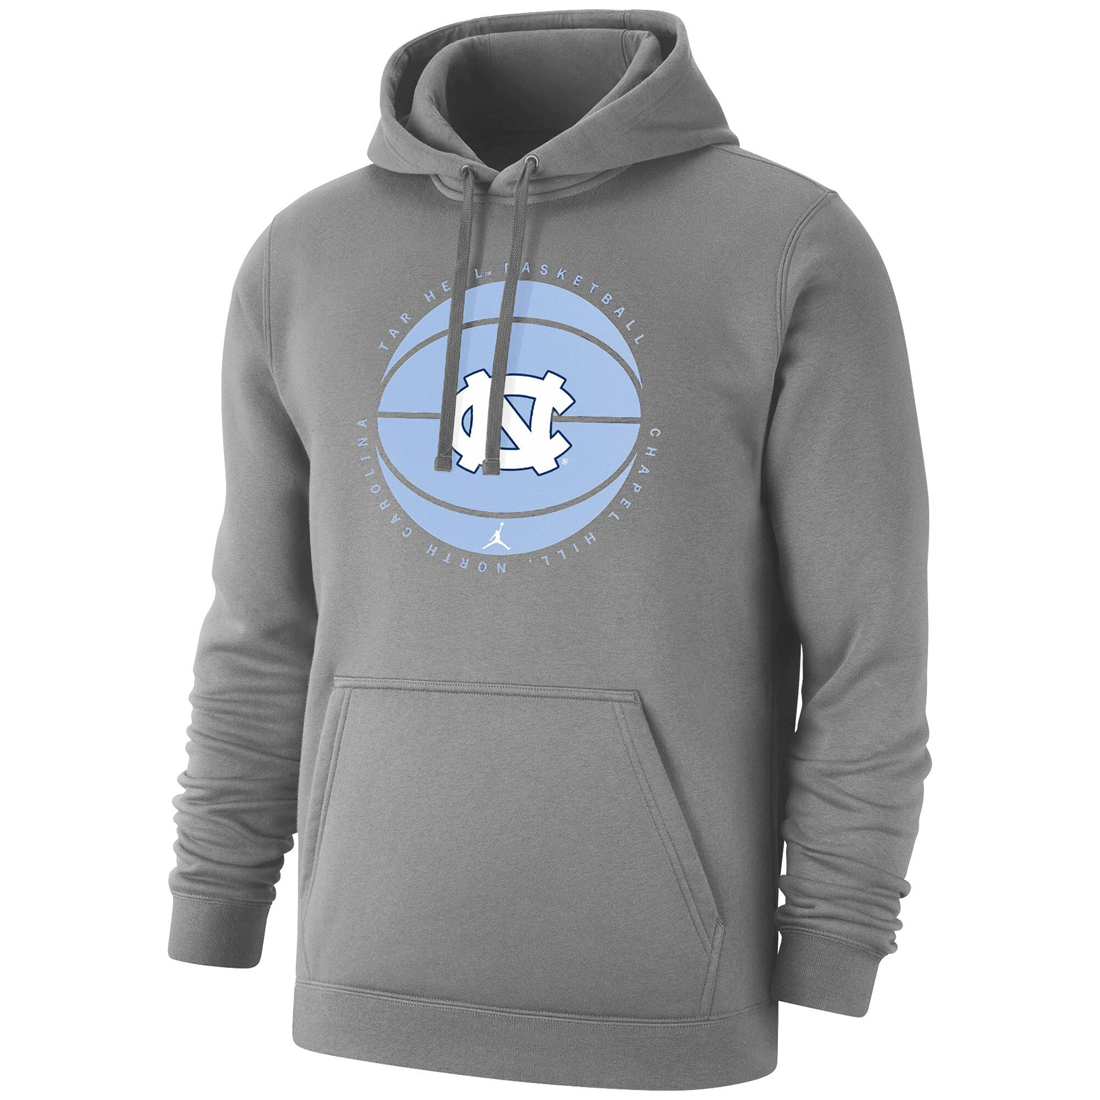 Jordan-11-Low-Cement-Grey-University-Blue-Hoodie